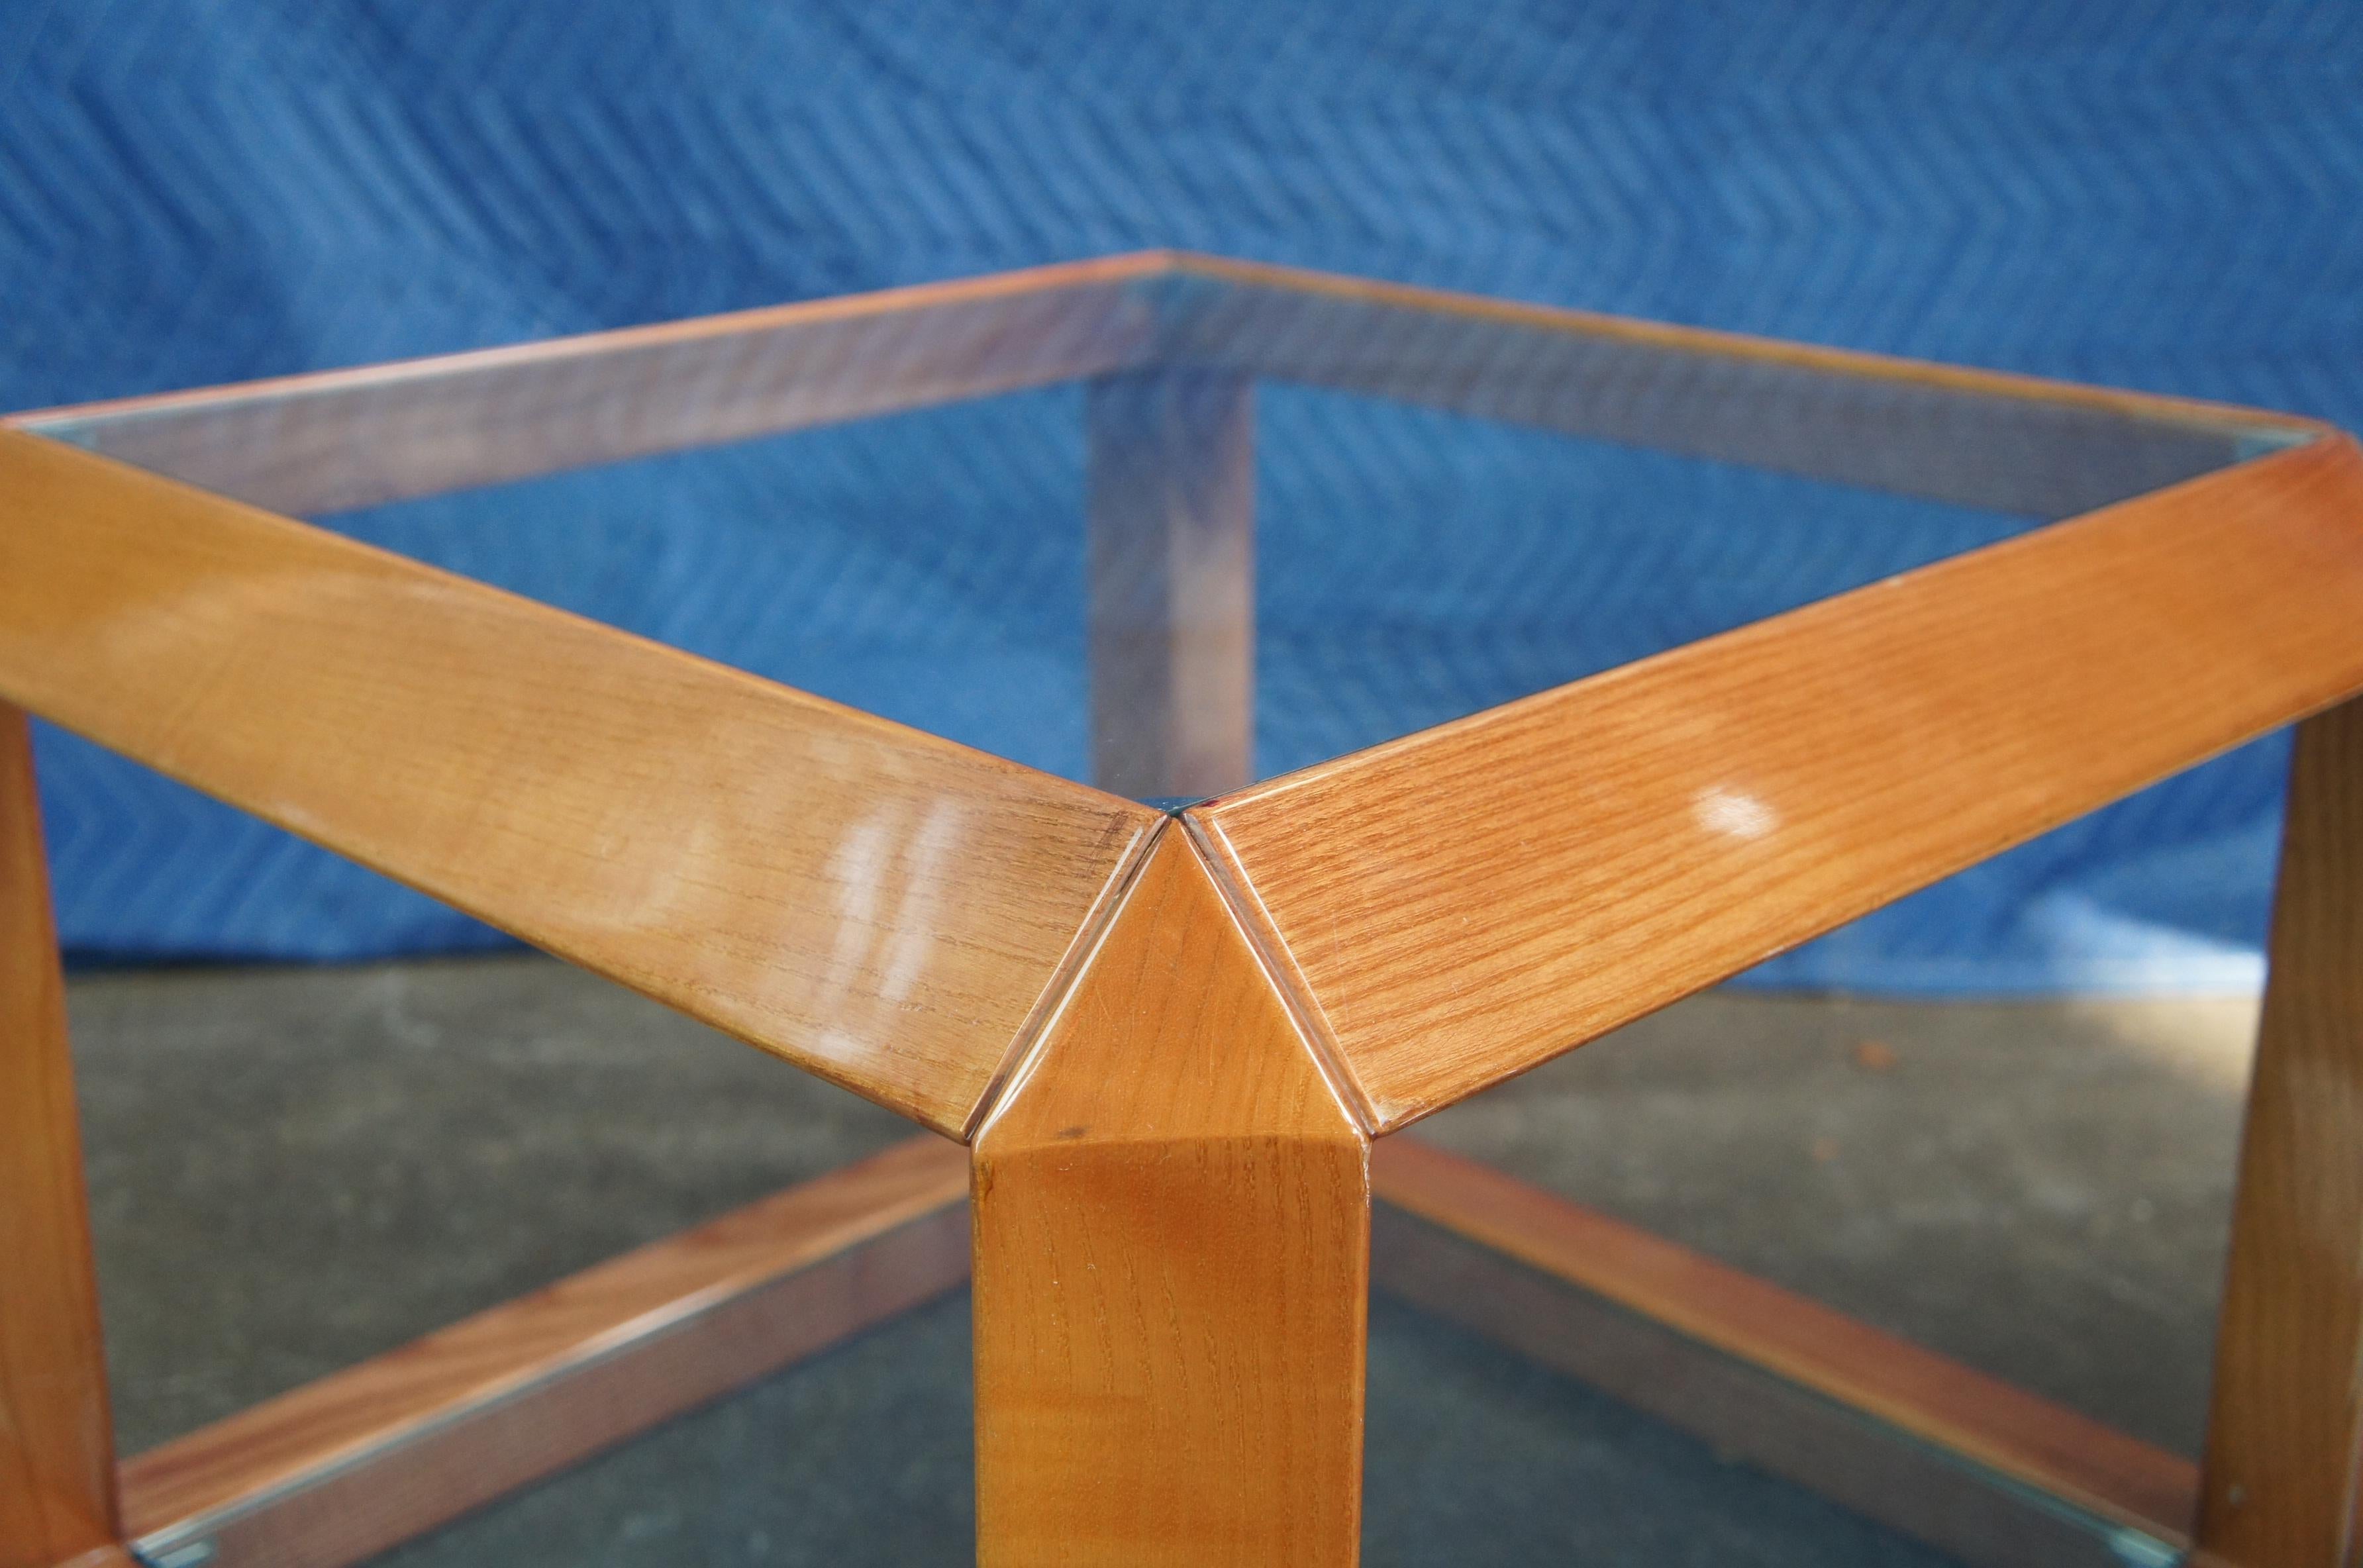 Verre Table d'appoint carrée cubique en bois et verre de style italien moderne du milieu du siècle dernier, table d'appoint minimaliste en vente